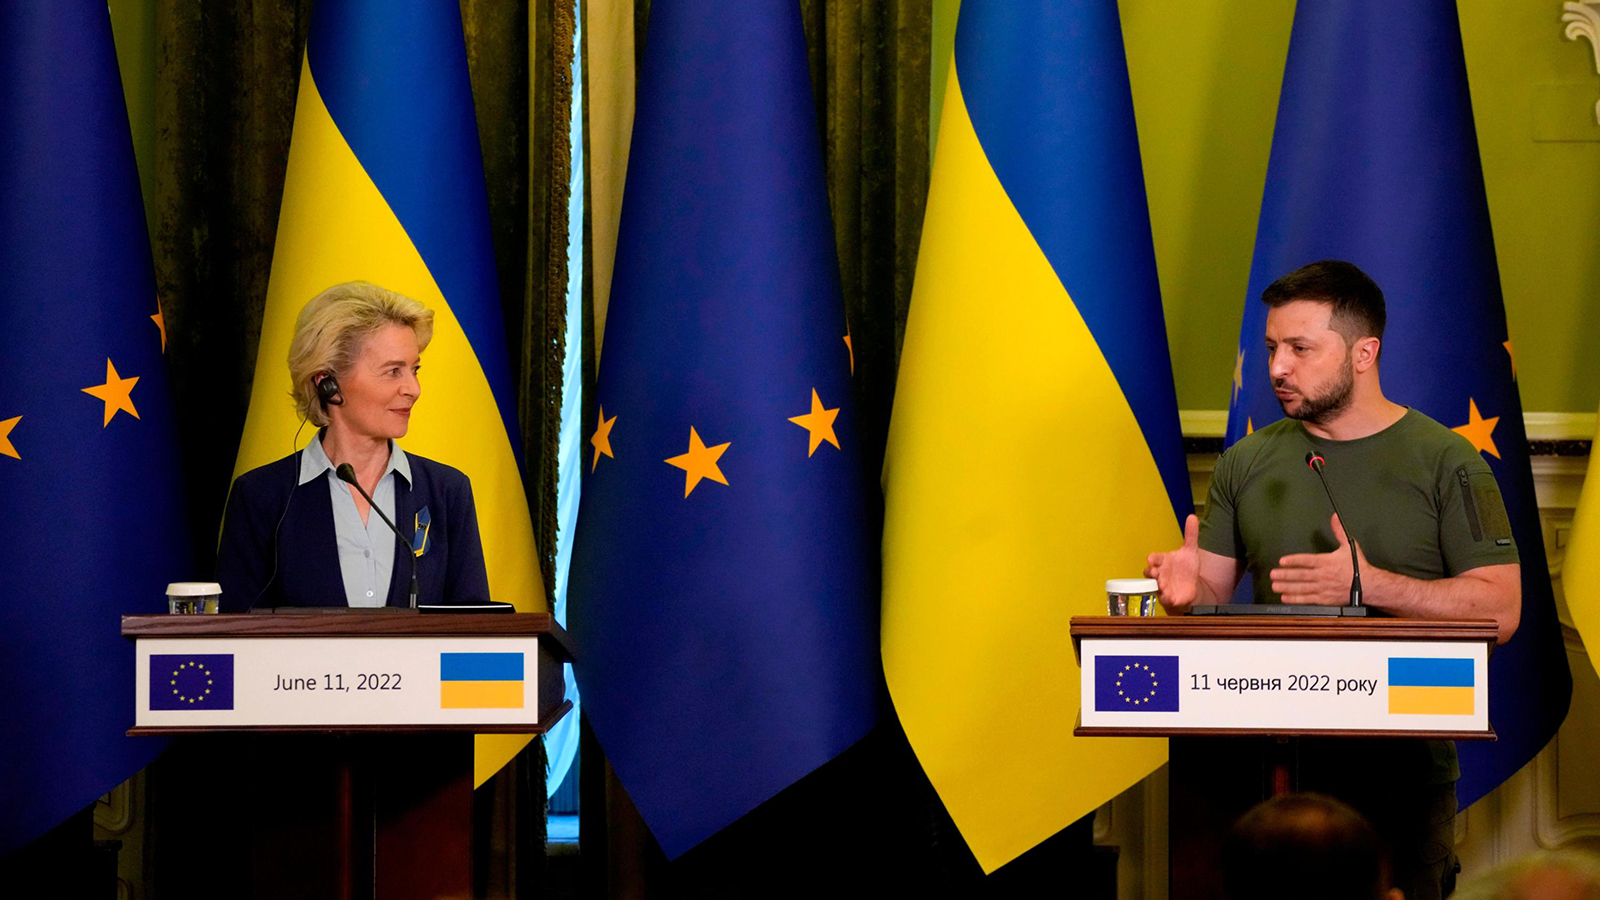 Ukraine President Volodymyr Zelensky speaks during a joint press conference with European Commission President Ursula von der Leyen in Kyiv, Ukraine, on Saturday, June 11. 